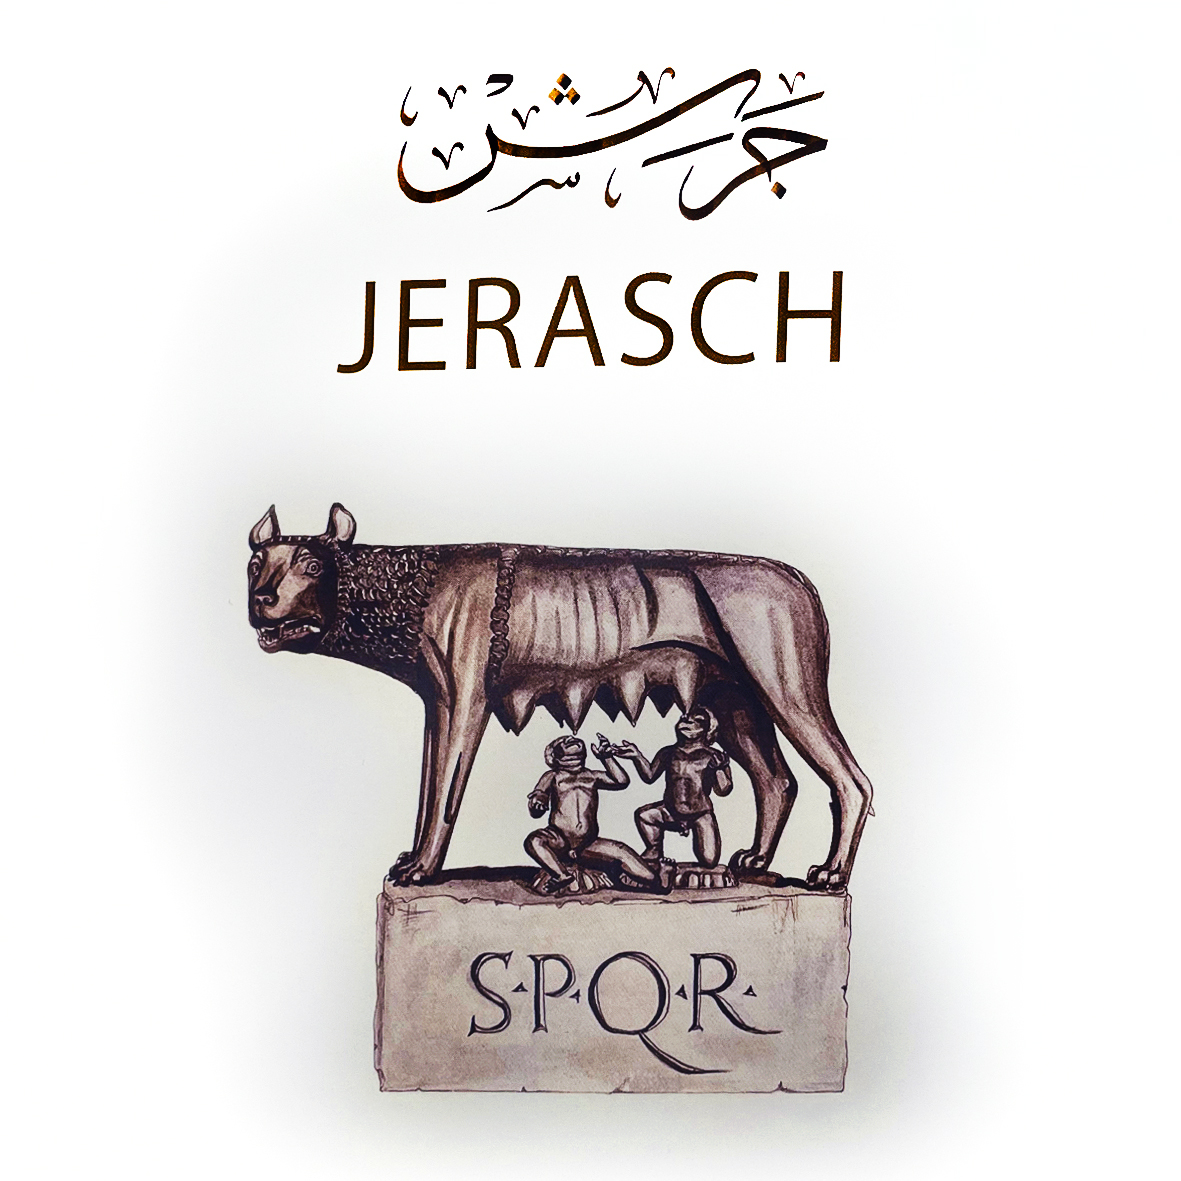 (Jerasch (Jordan, Photo art book)